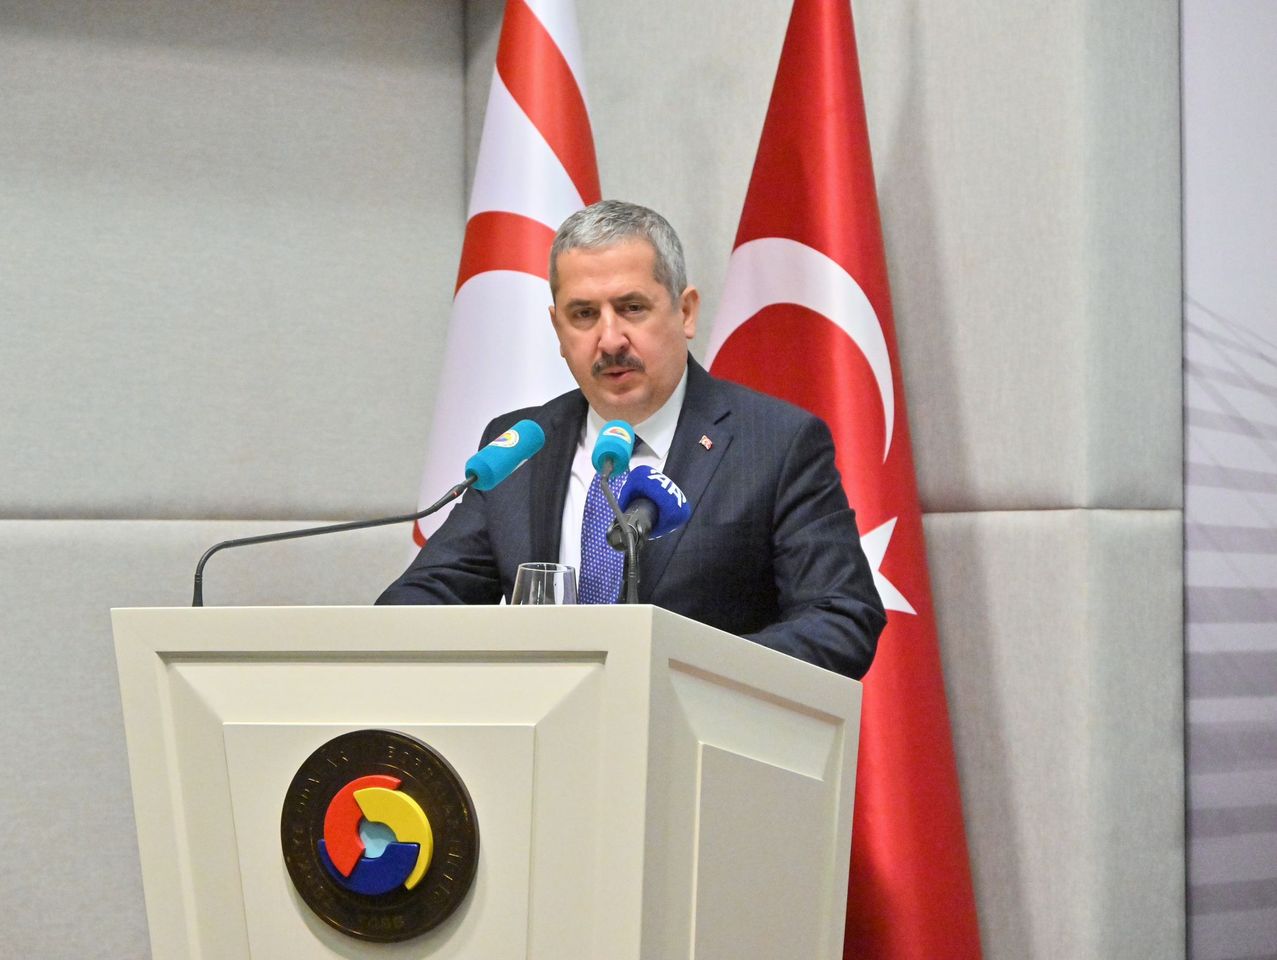 Ticaret Bakanlığı Yetkilisi, Türkiye ile Diğer Ülke Arasındaki Ticari İlişkilerin Geliştirilmesini Amaçlıyor